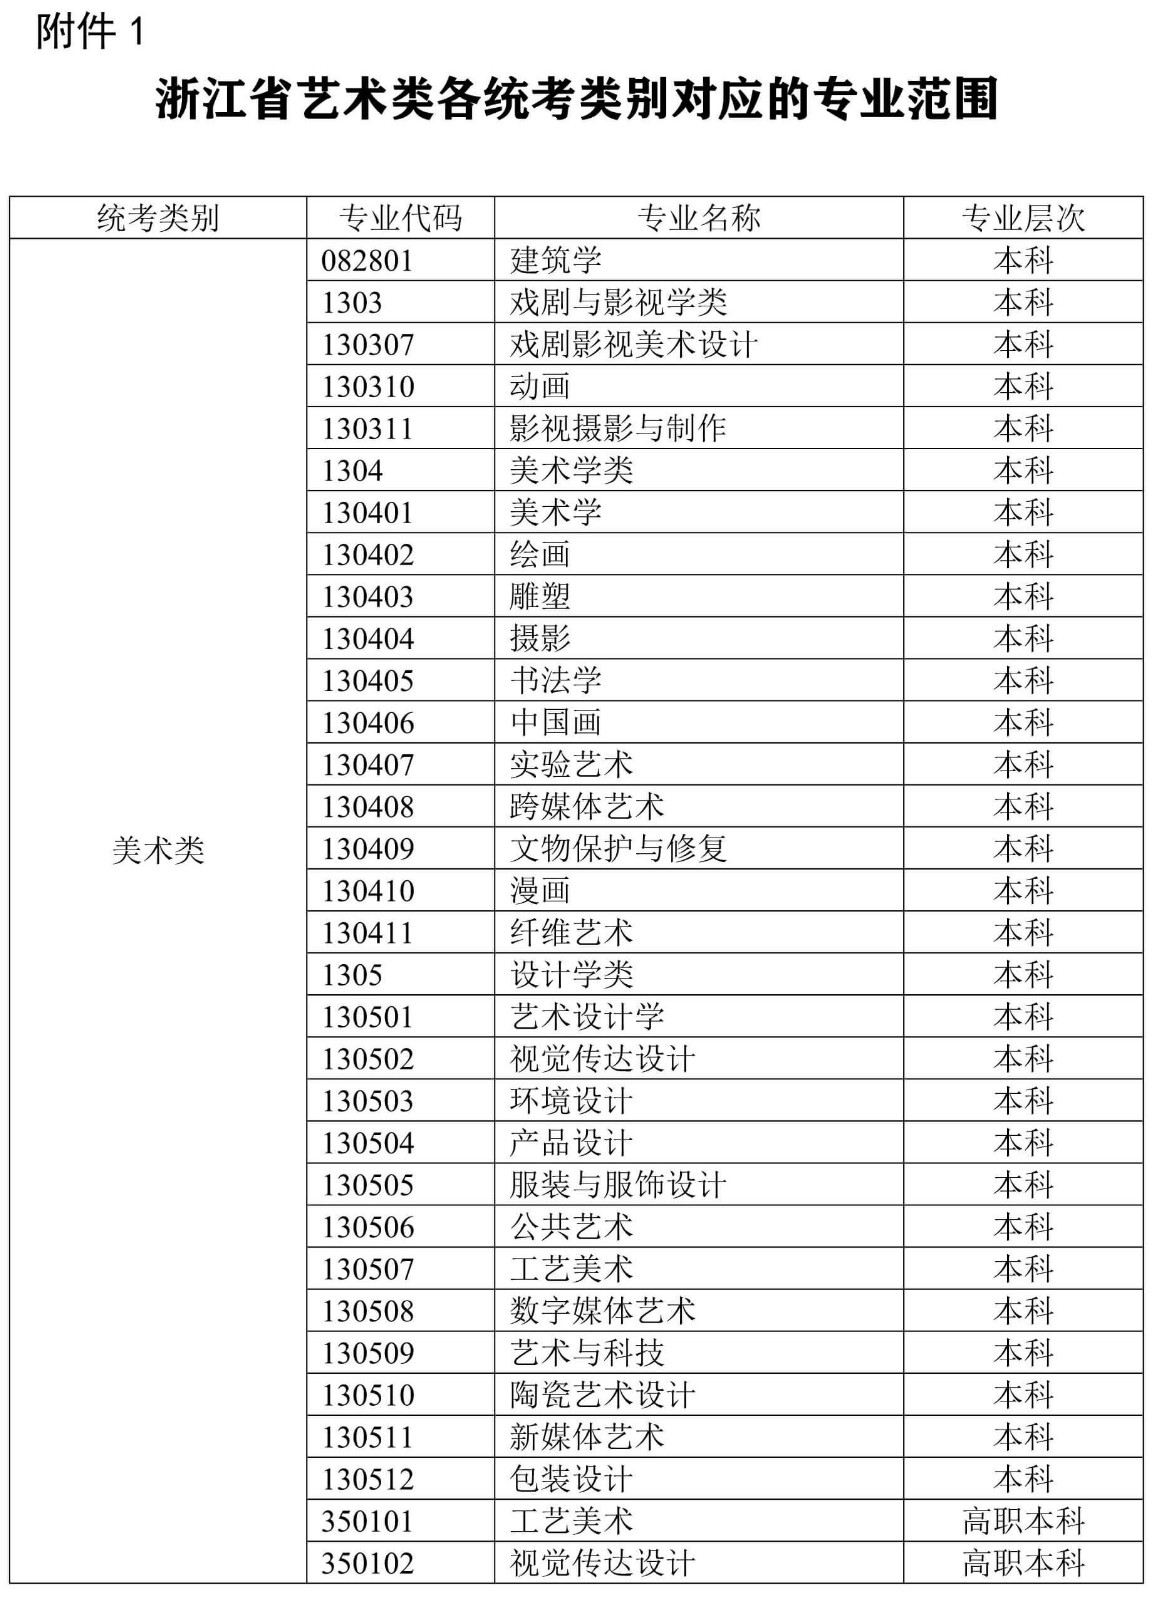 浙江省教育考試院關于做好2022年普通高校藝術類專業招生工作的通知